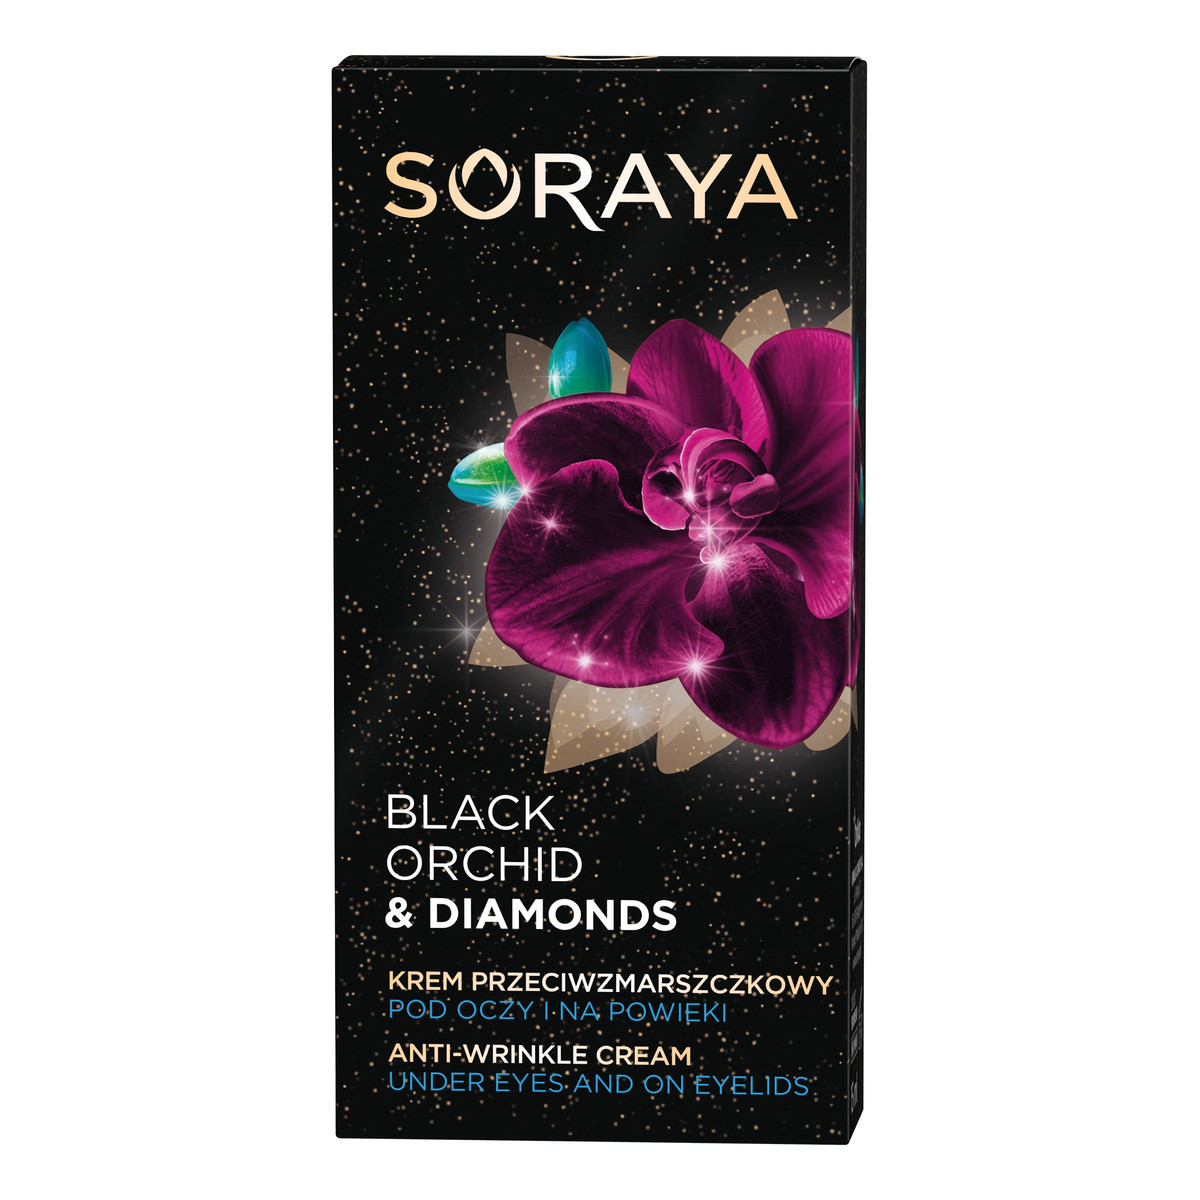 Soraya Black Orchid & Diamonds Krem przeciwzmarszczkowy pod oczy i na powieki 15ml